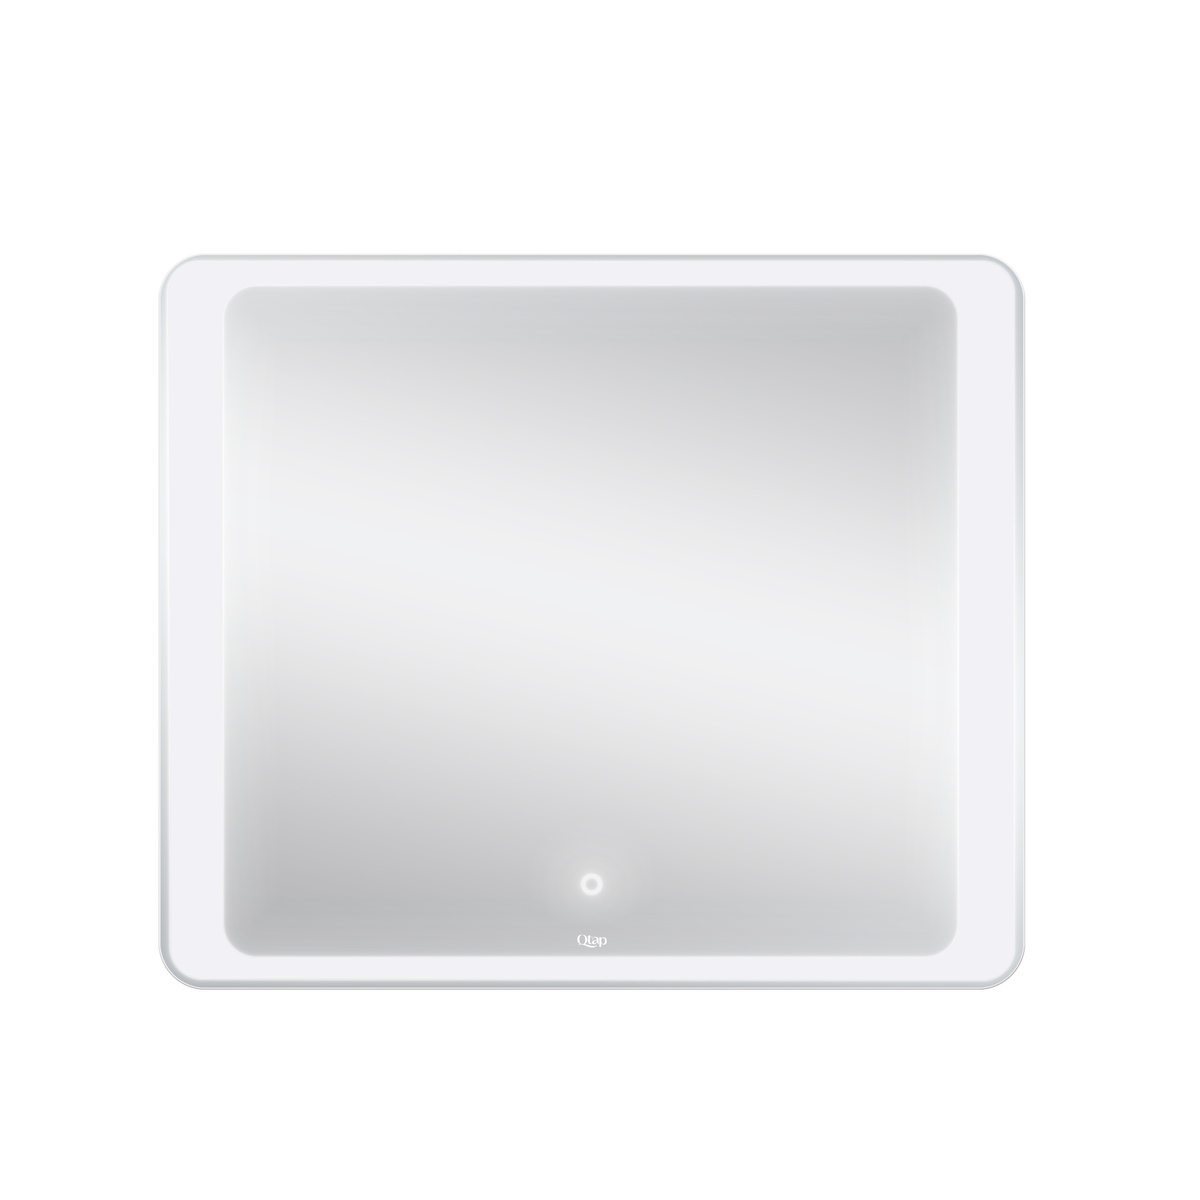 Зеркало прямоугольное для ванны Q-TAP Leo 70x80см c подсветкой сенсорное включение QT117814187080W